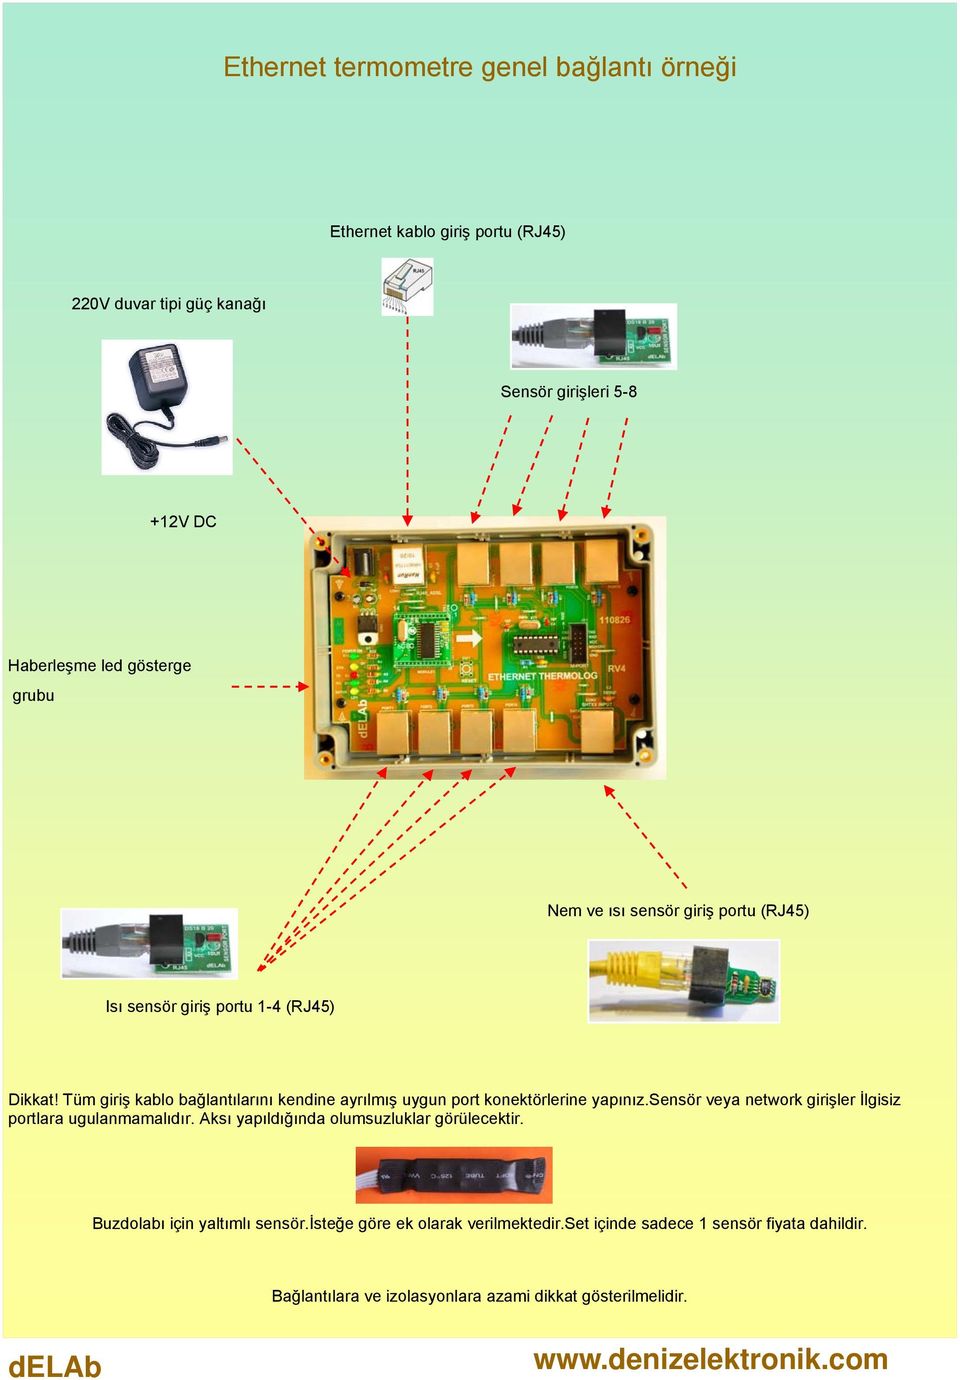 Tüm giriş kablo bağlantılarını kendine ayrılmış uygun port konektörlerine yapınız.sensör veya network girişler İlgisiz portlara ugulanmamalıdır.